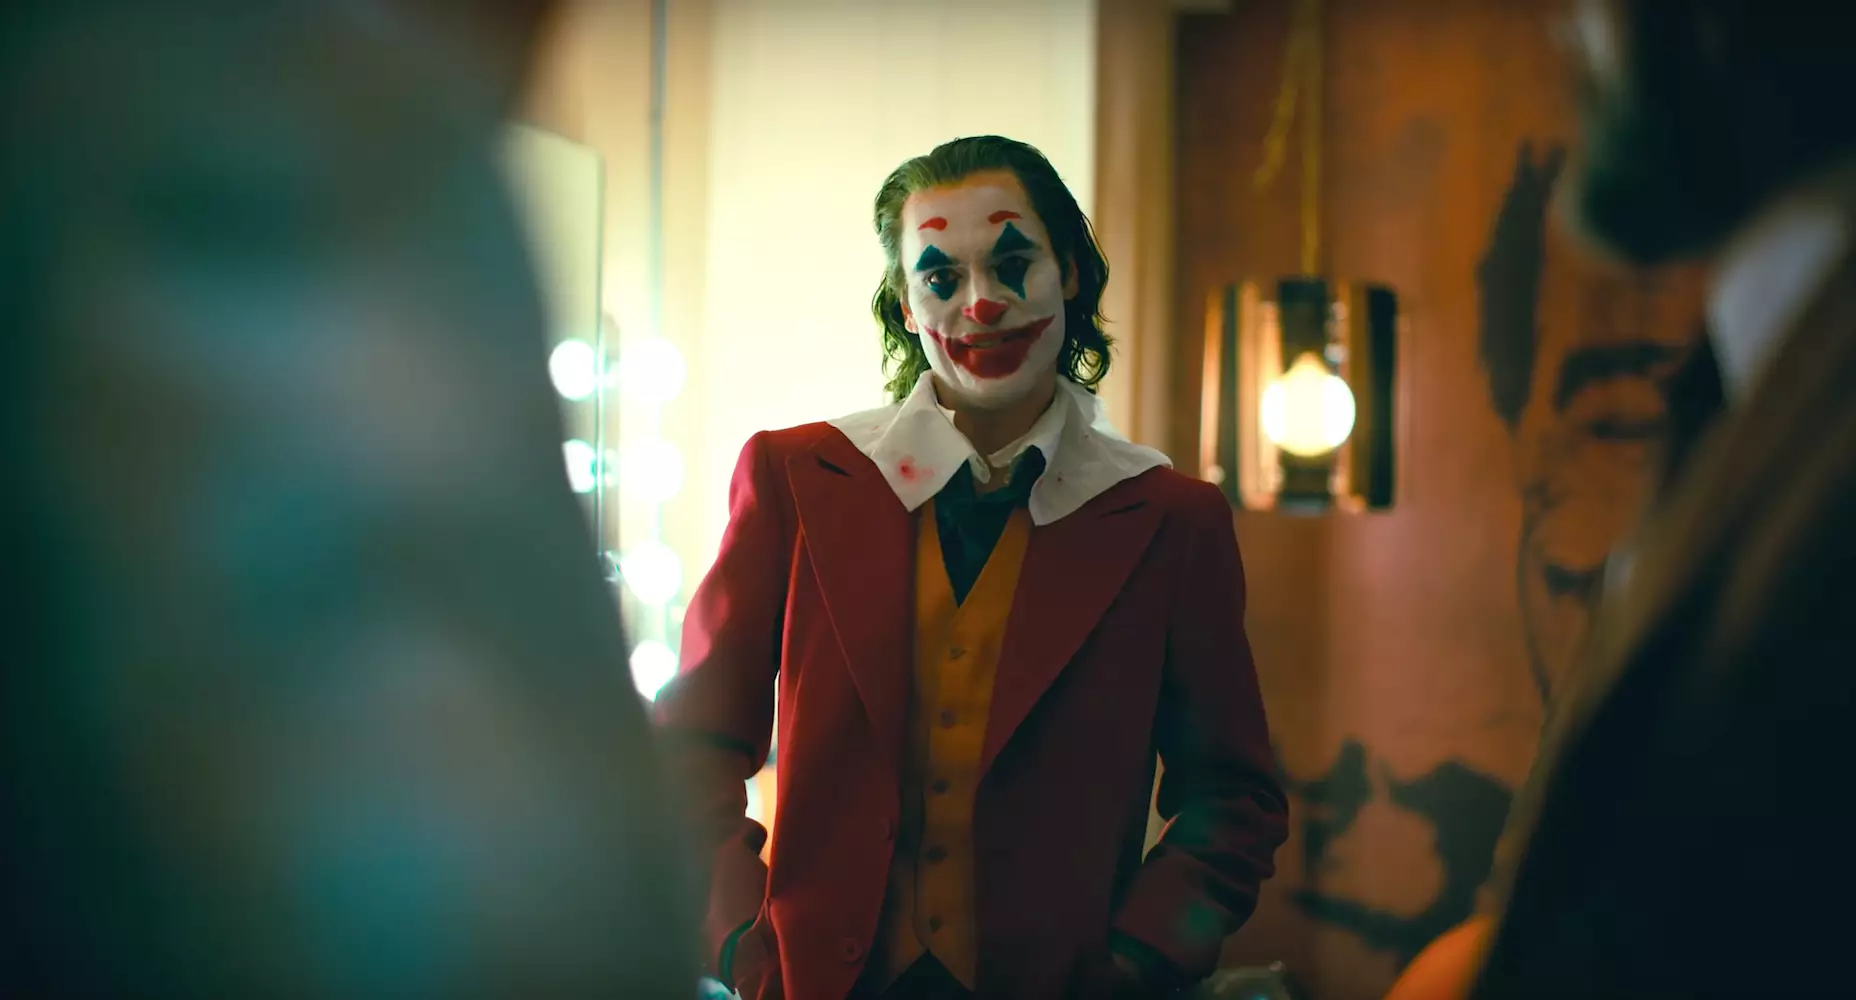 The Joker Movie Release Date In UK Is 4 October 2019.